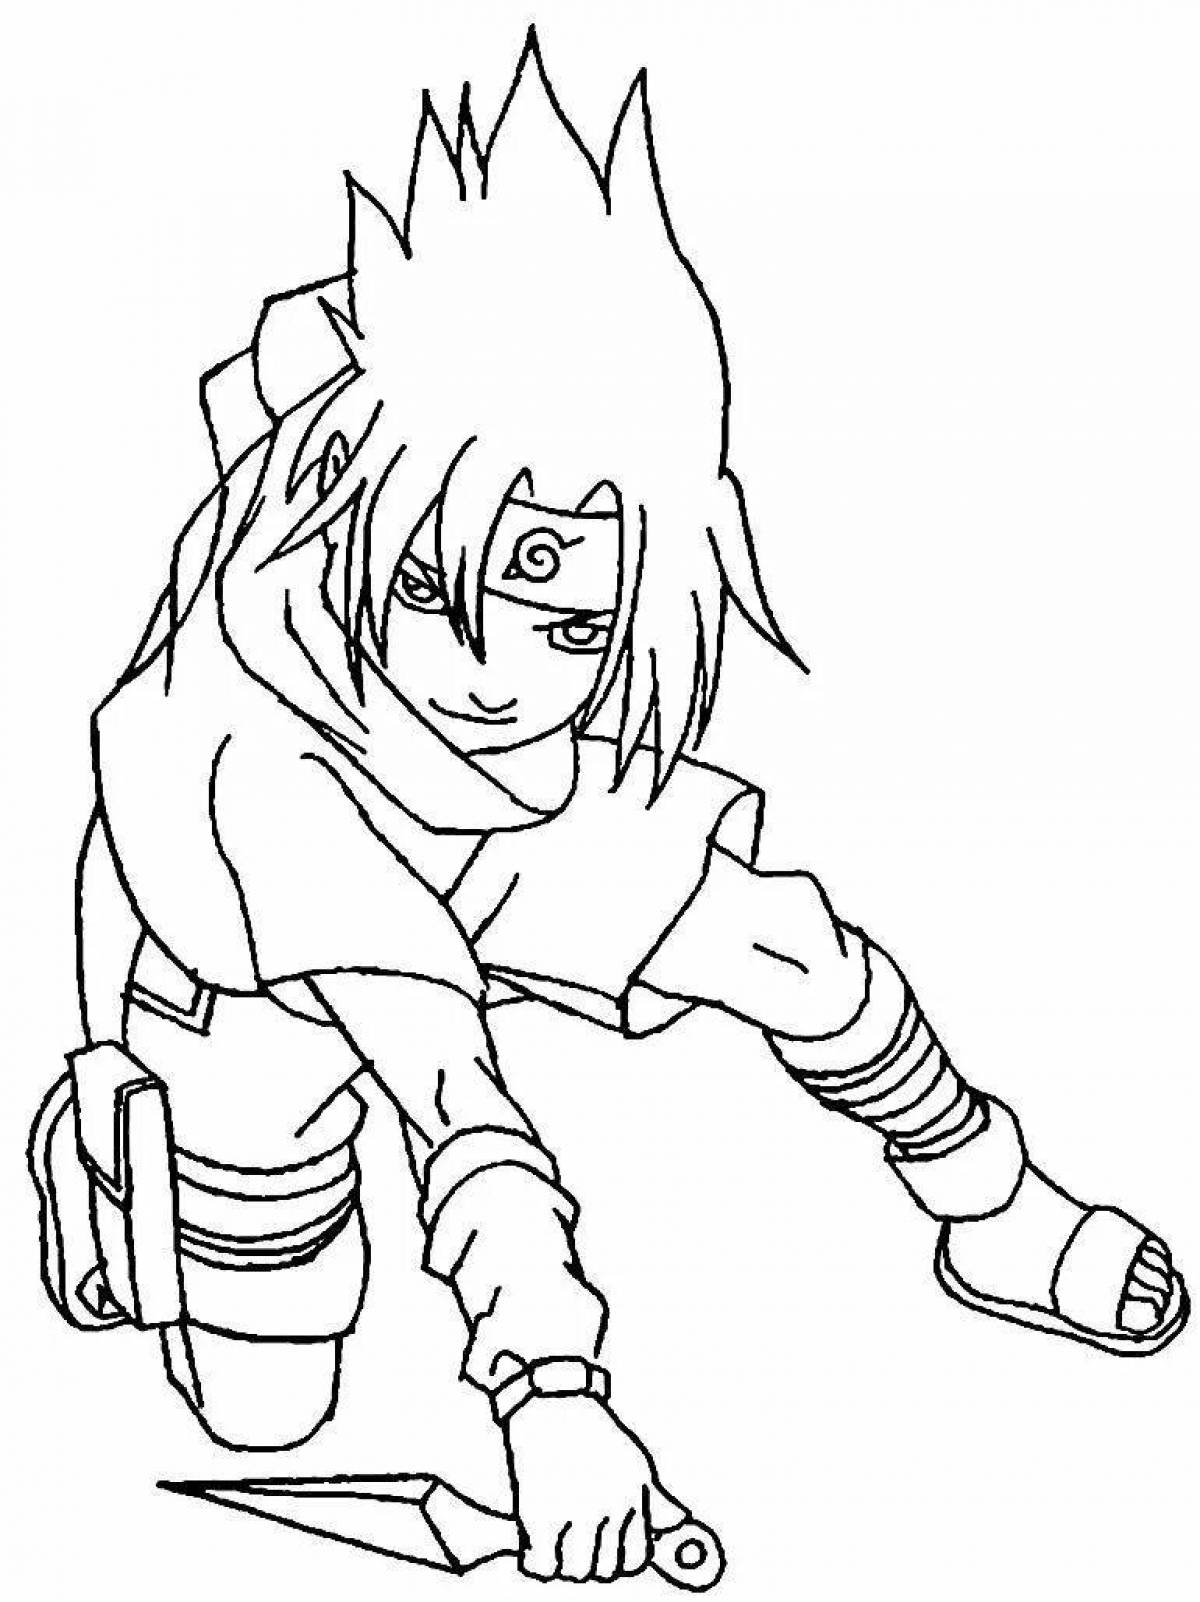 Charming sasuke coloring page